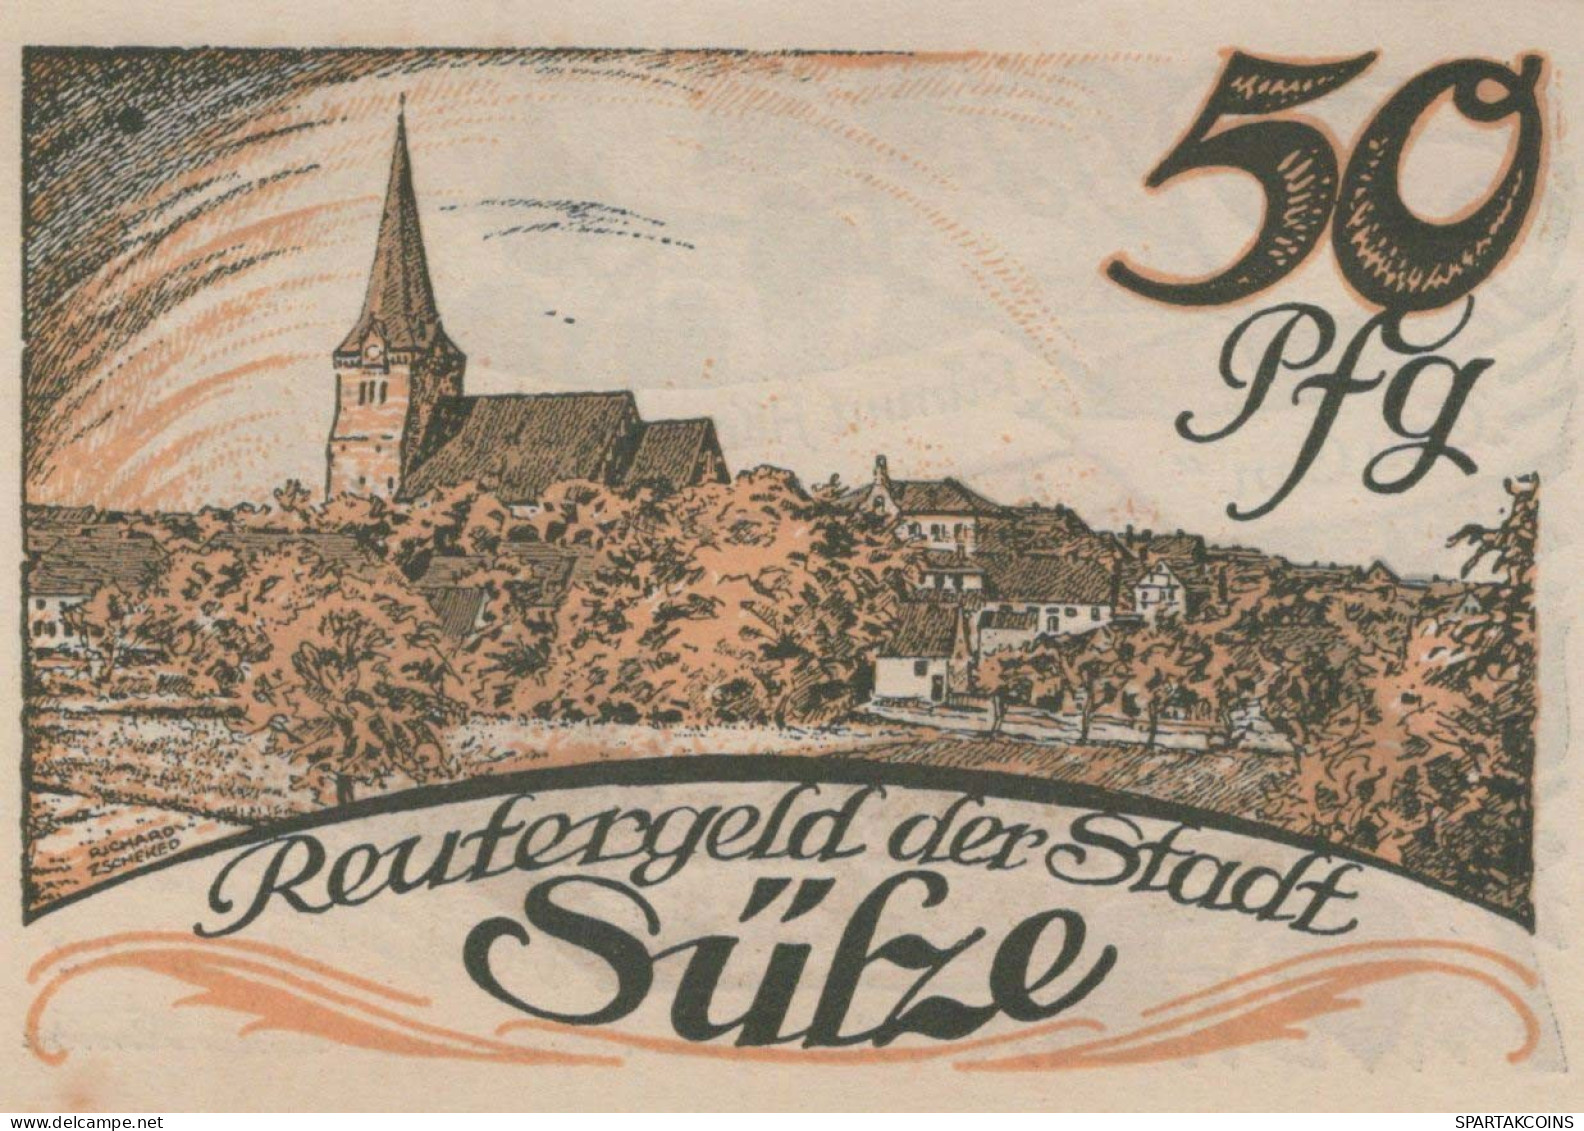 50 PFENNIG 1922 Stadt SÜLZE Mecklenburg-Schwerin UNC DEUTSCHLAND Notgeld #PI973 - [11] Local Banknote Issues